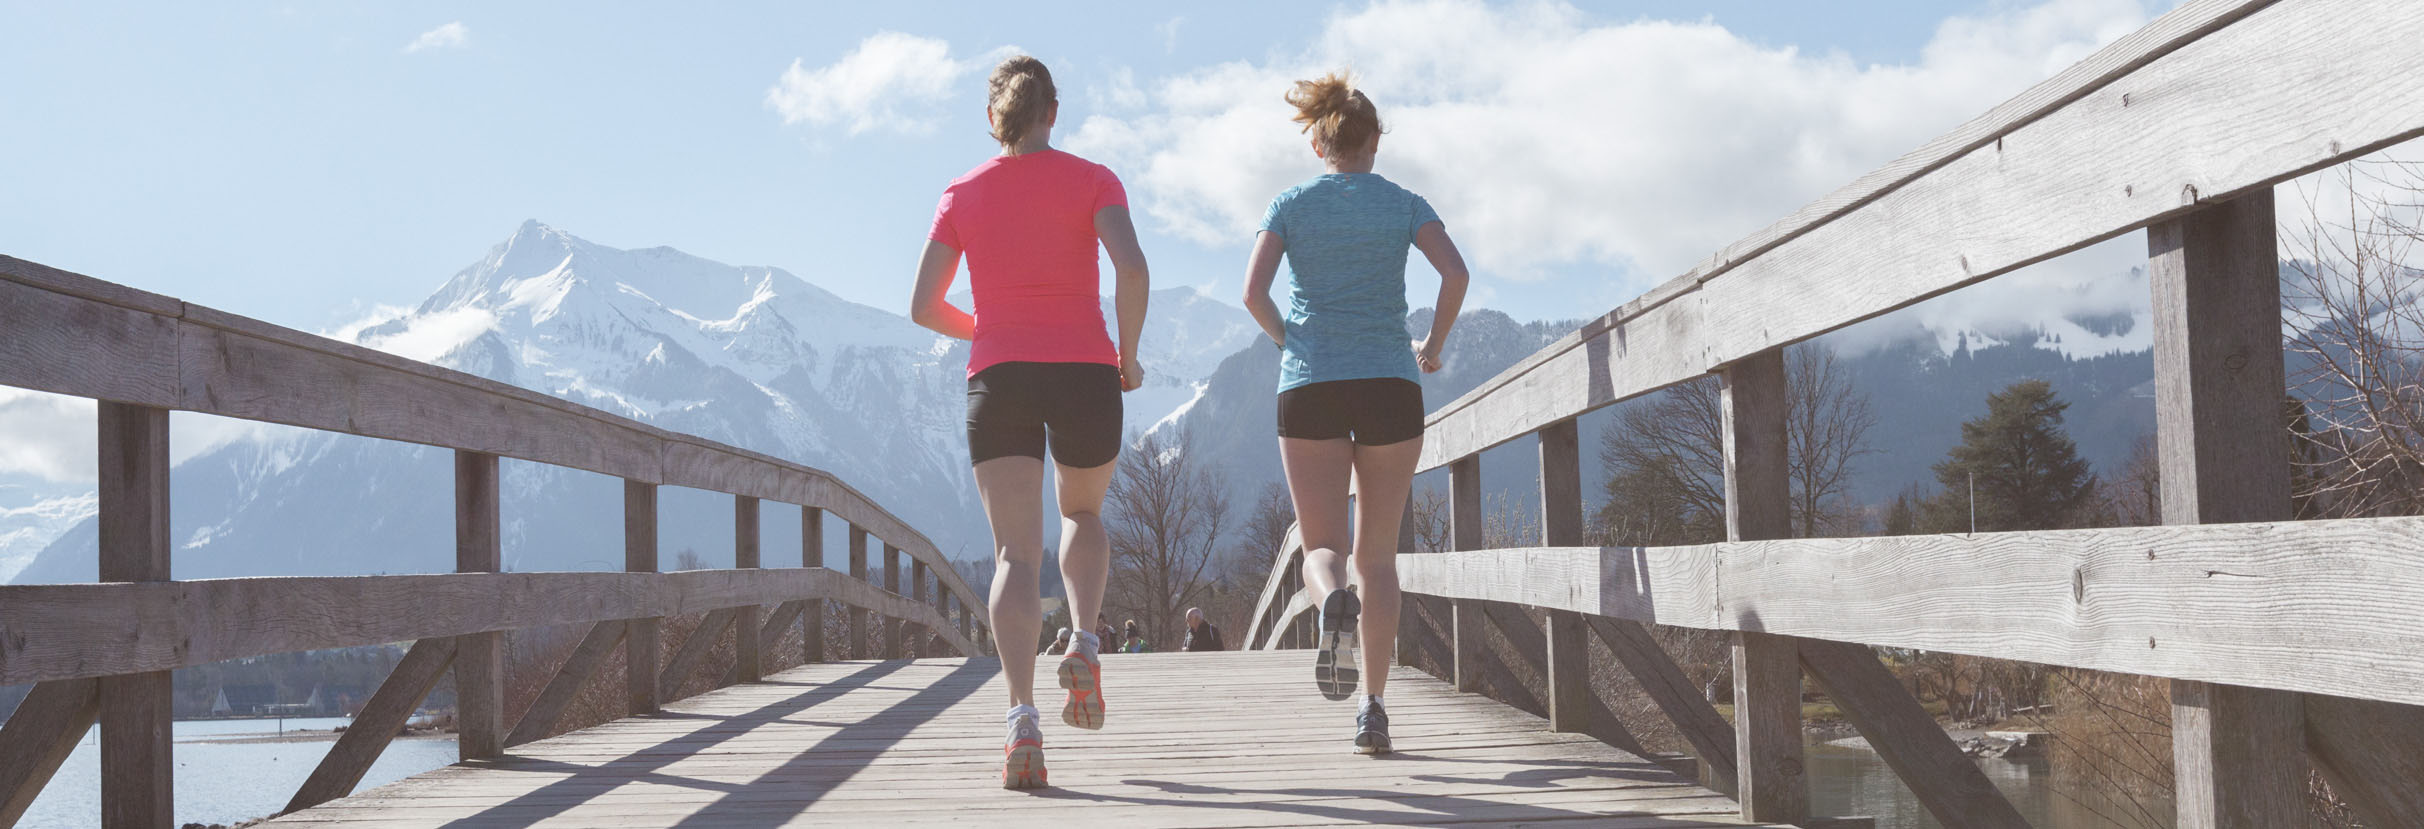 Willkommen bei gerbersport – Ihrem Laufsportspezialisten in der Region Bern!